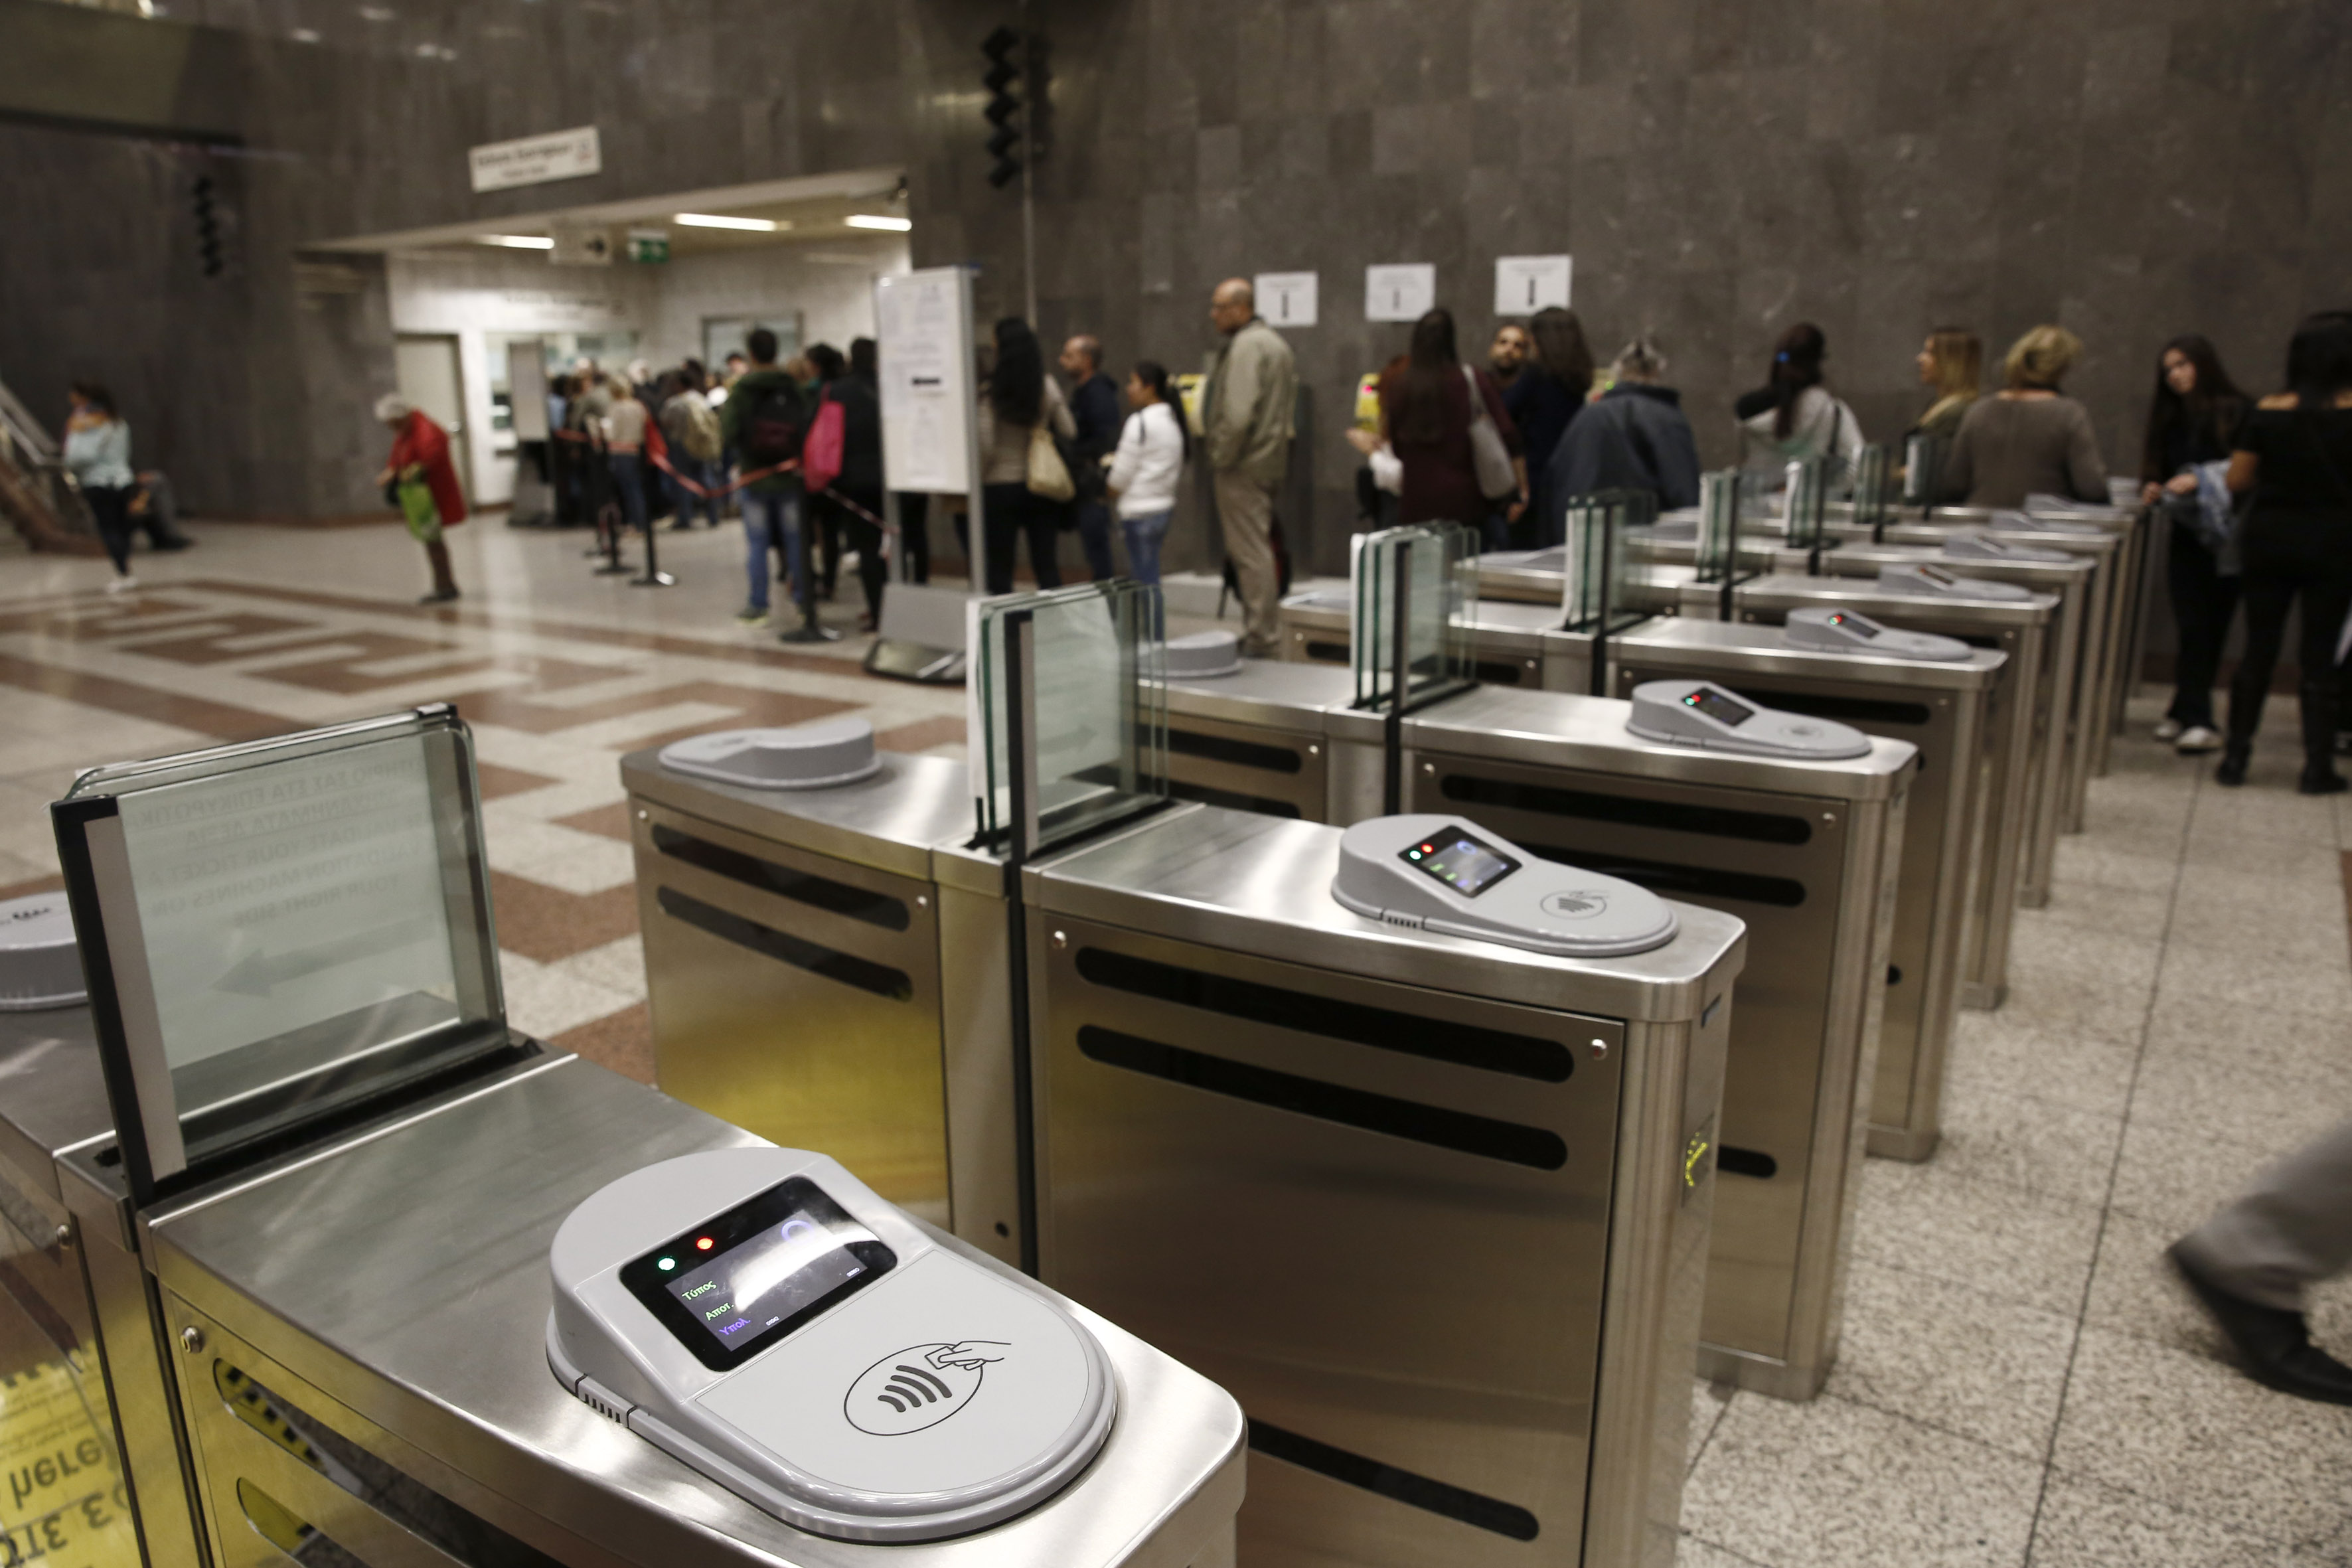 Σε ποιους σταθμούς του Μετρό κλείνουν οι μπάρες στις 15 Μαρτίου